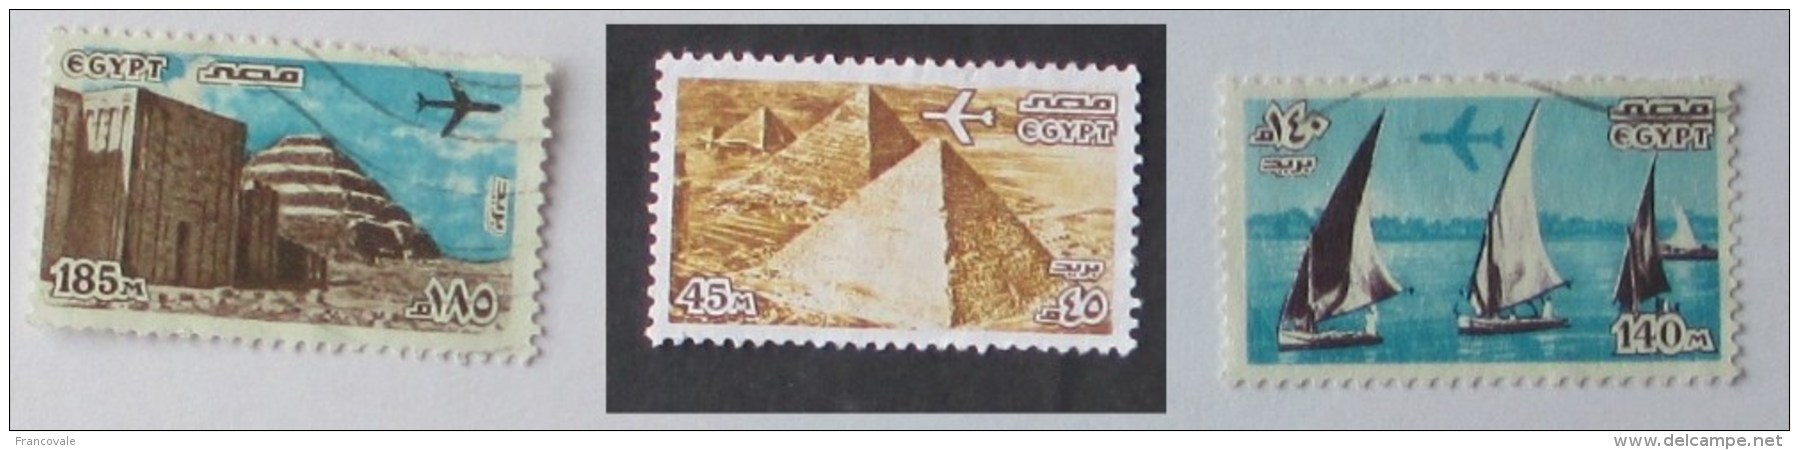 Egitto 1978 Air Mail 3 Stamps Used  Aereo Sulle Piramidi E Sul Nilo Pyramids And Nile - Gebraucht